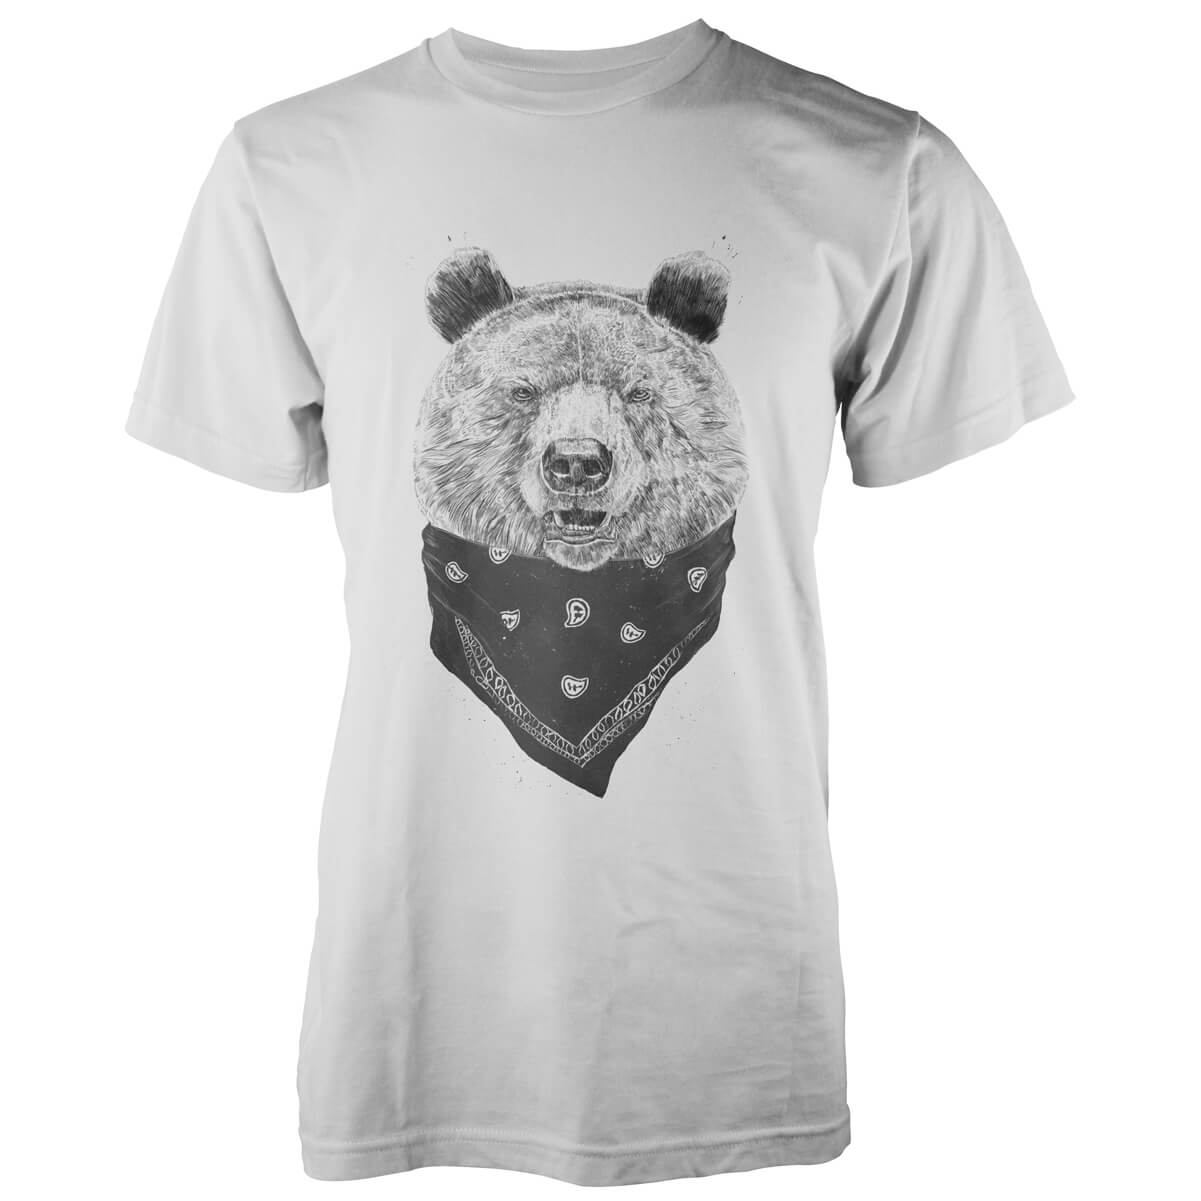 Balazs Solti Wild Bear White T-Shirt - S - White